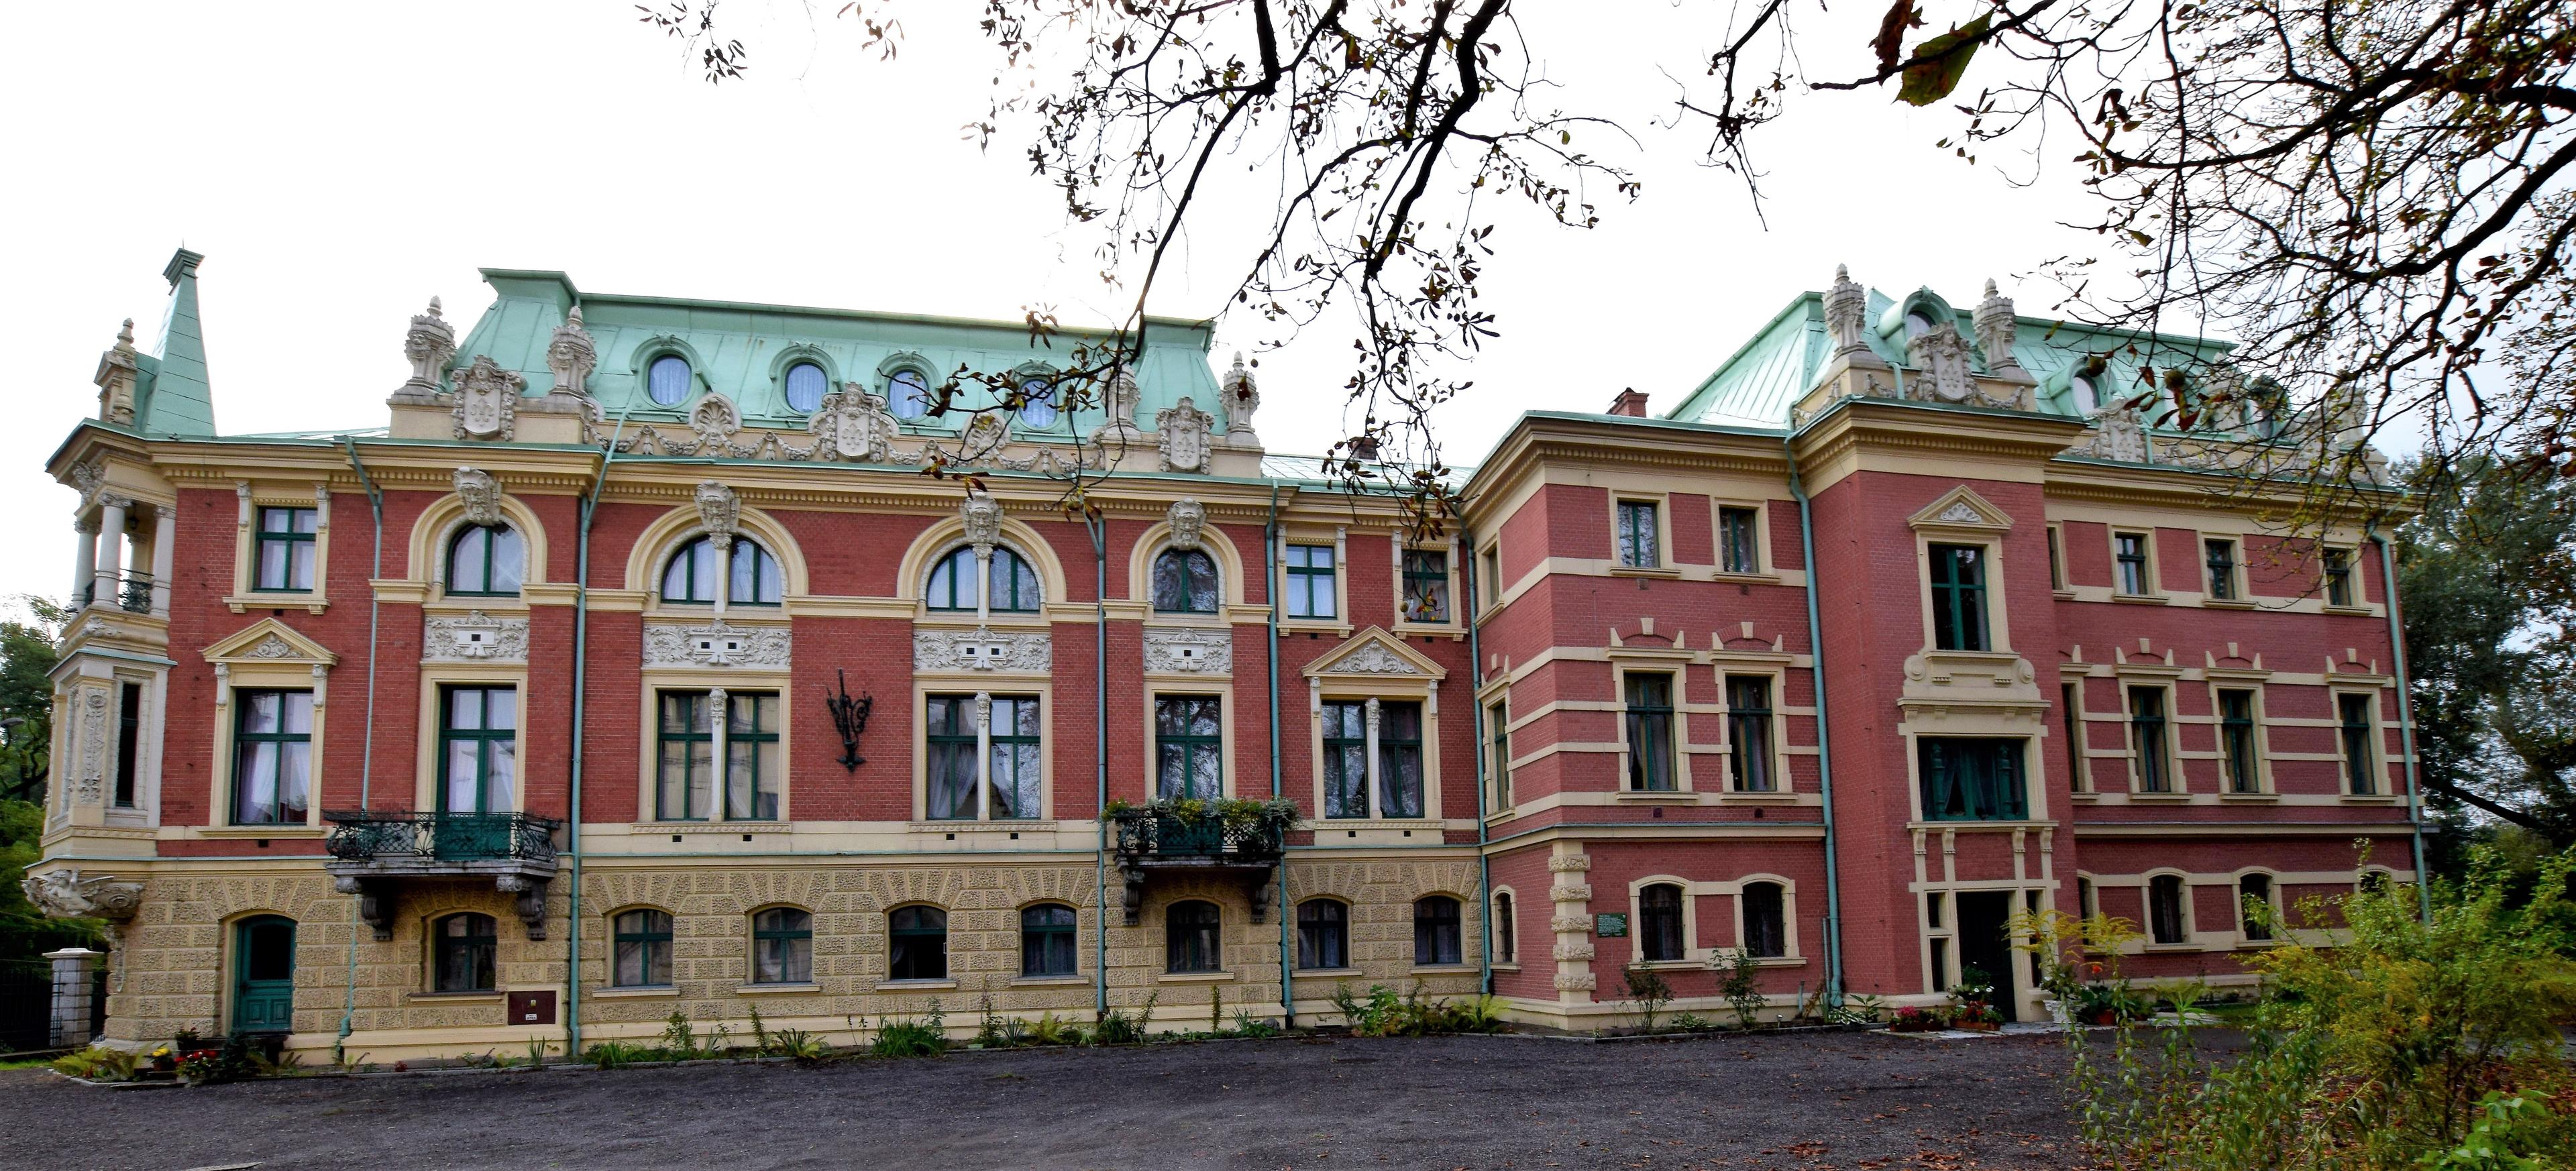 Ogromny, wyremontowany pałac